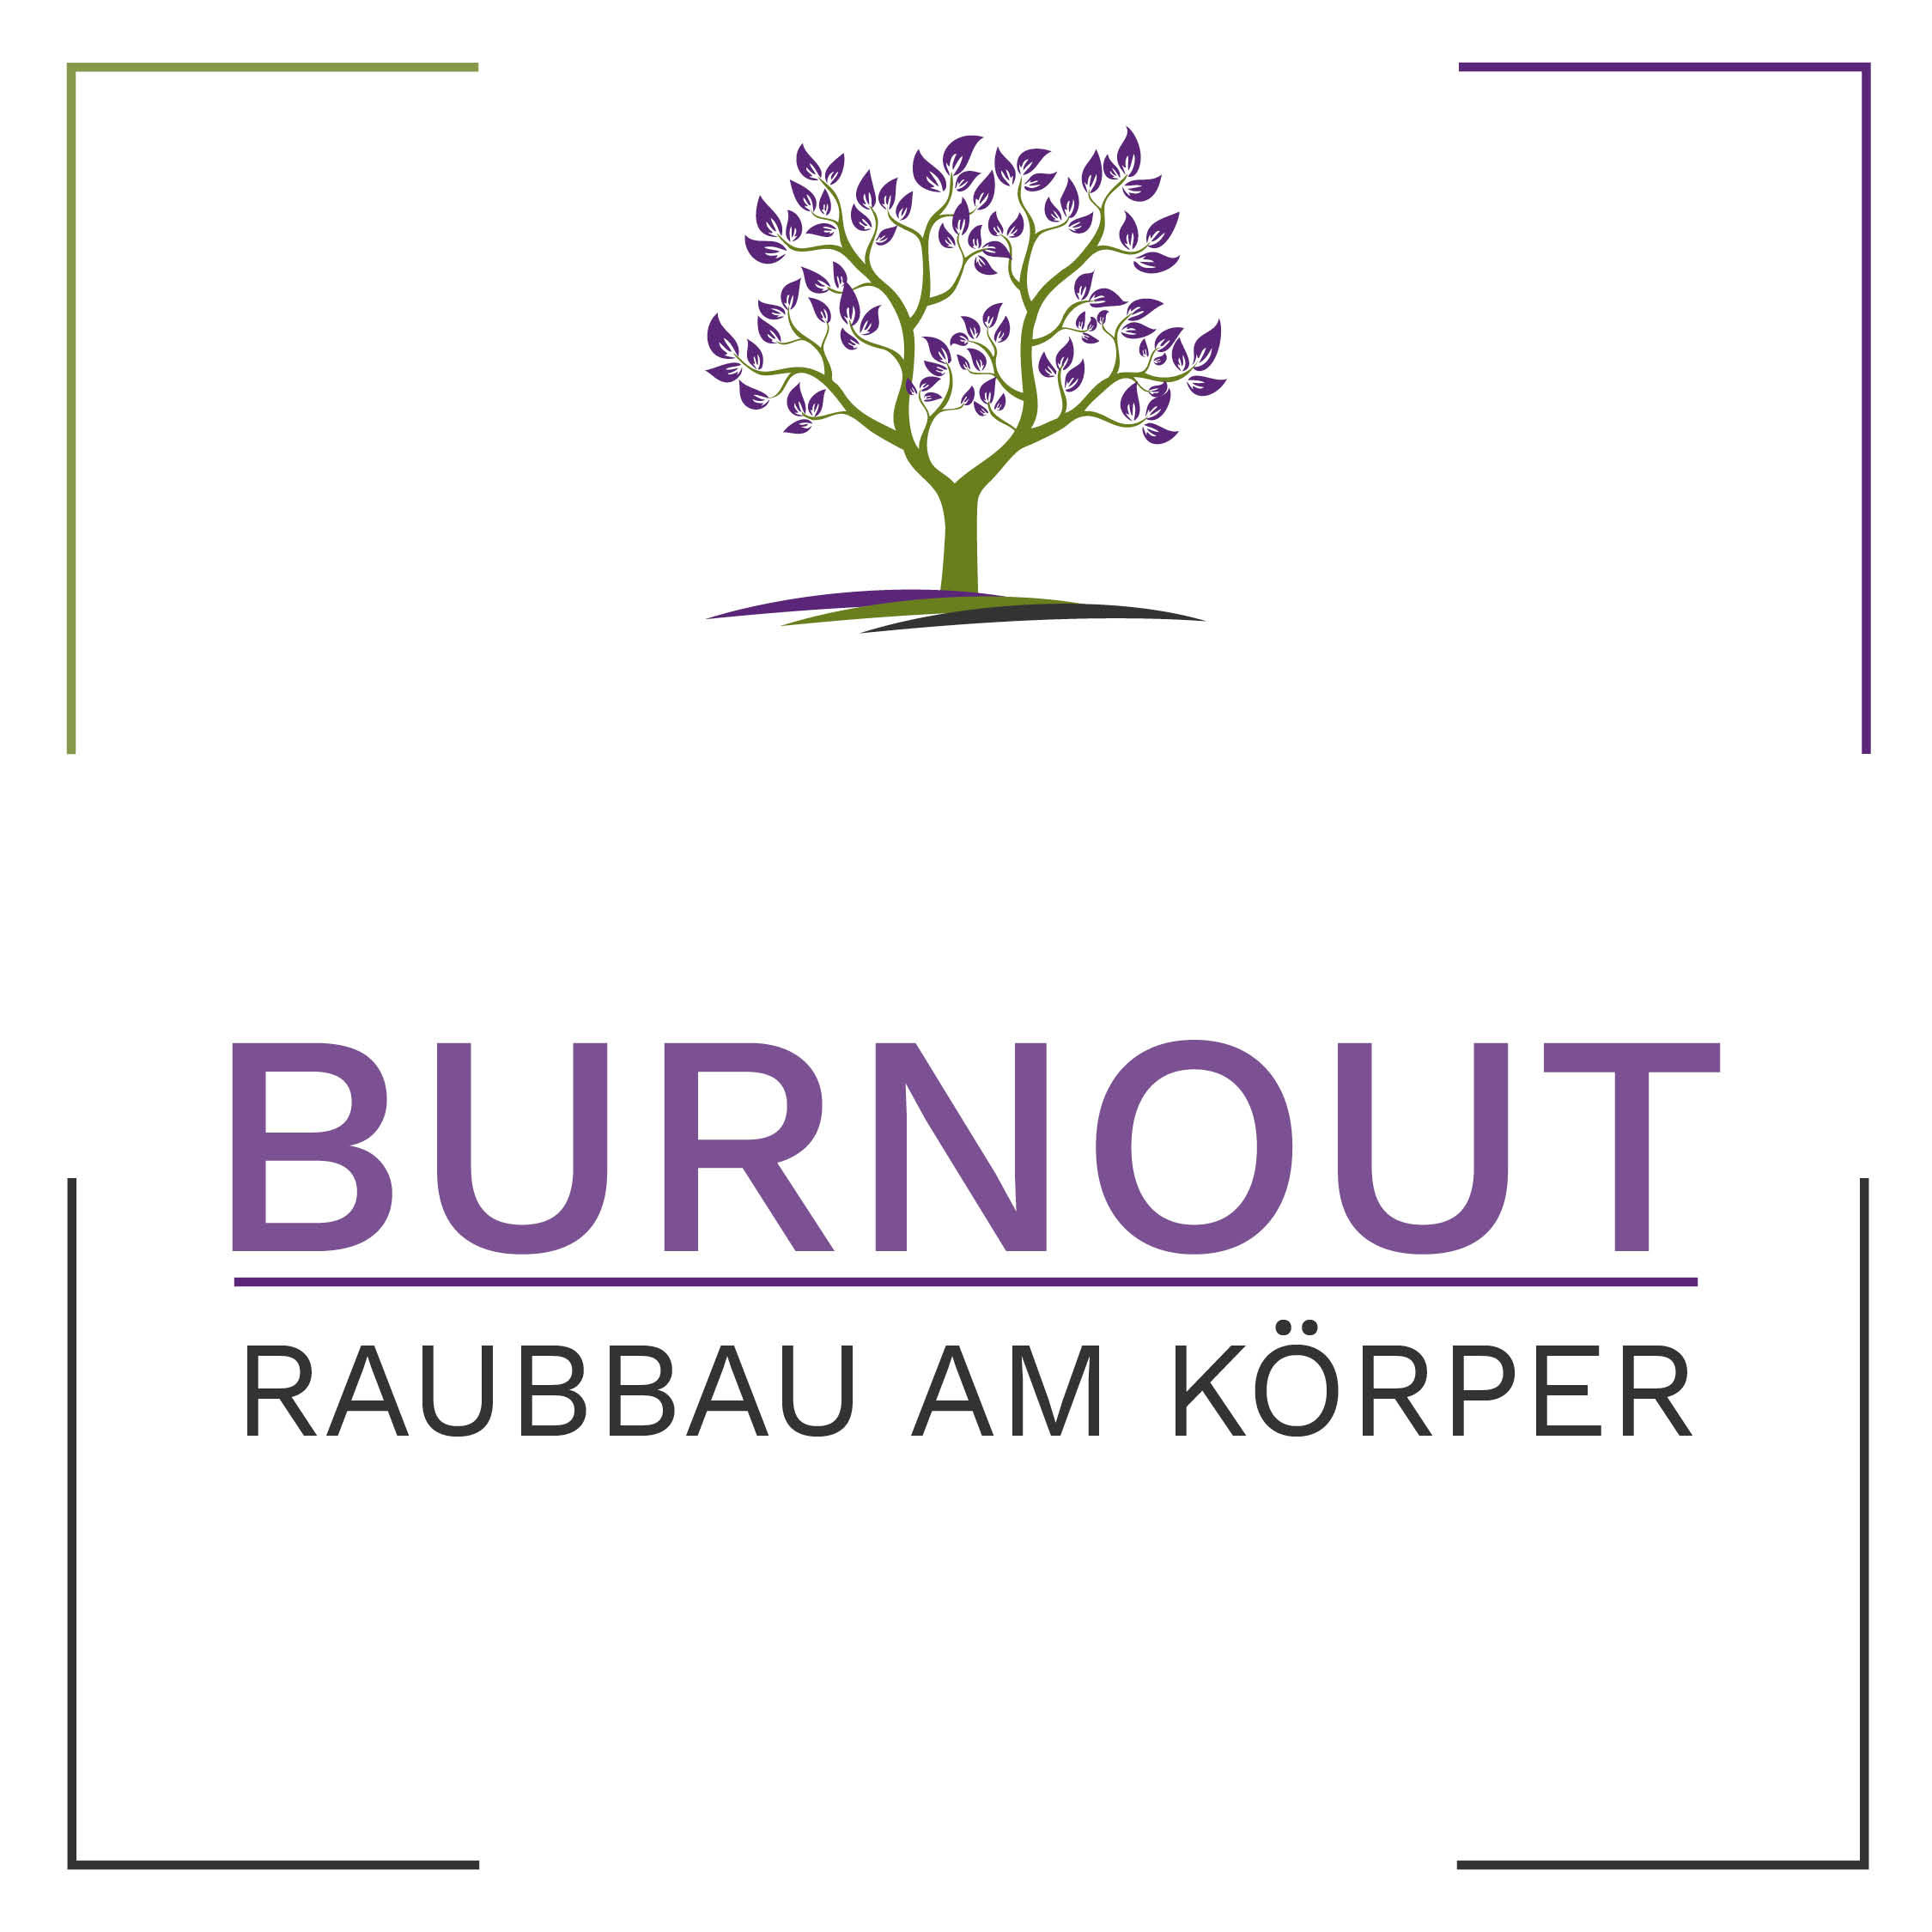 Burnout – Raubbau am Körper